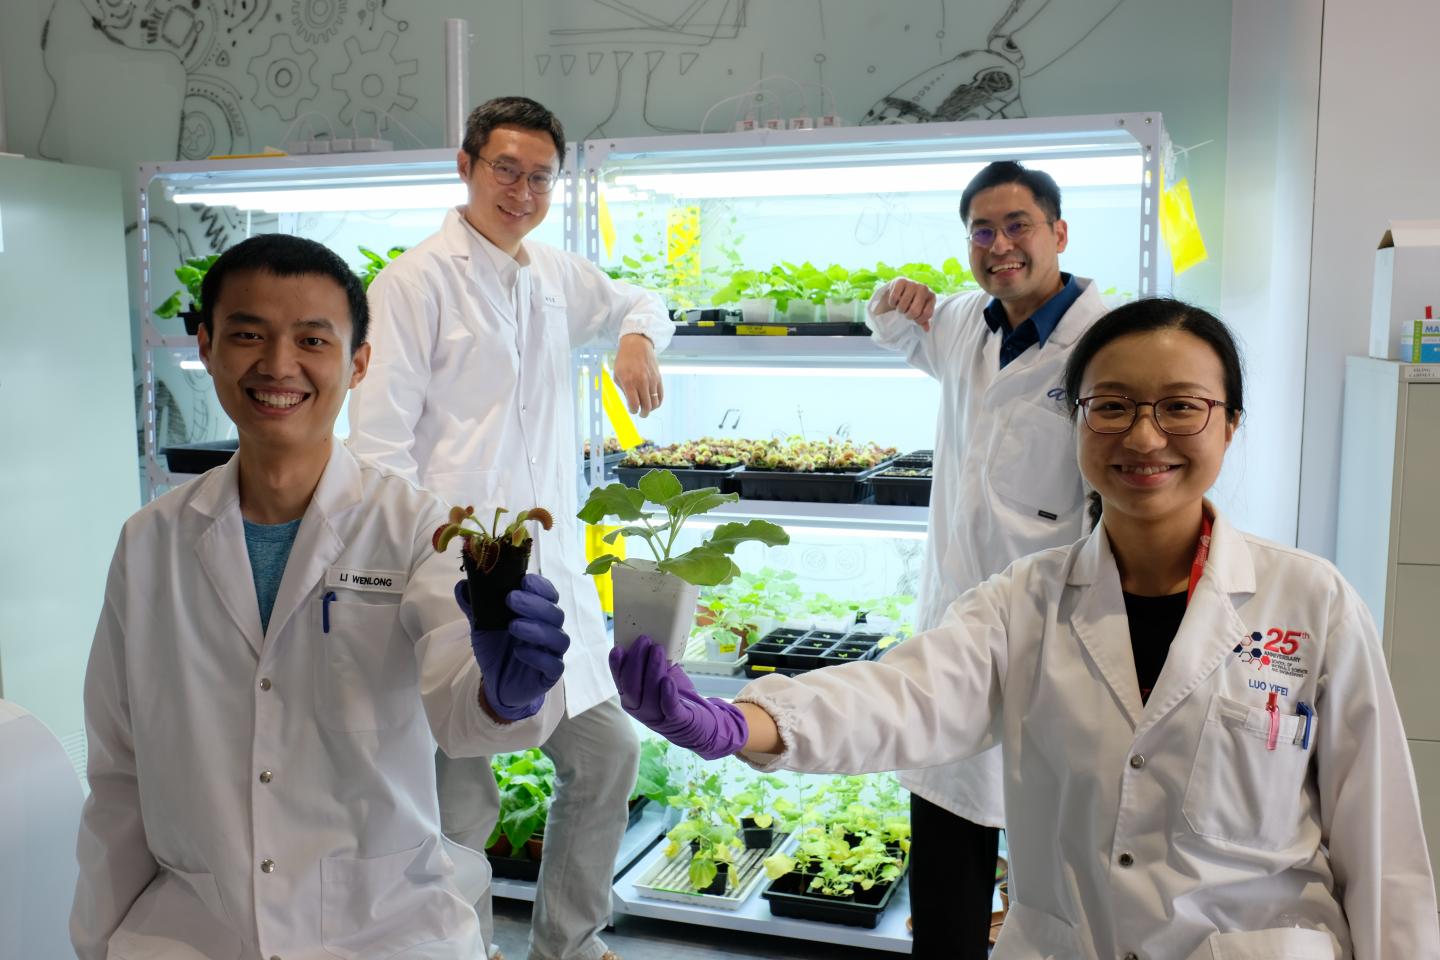 محققان سنگاپوری موفق به توسعه دستگاهی برای برقراری ارتباط با گیاهان شدند